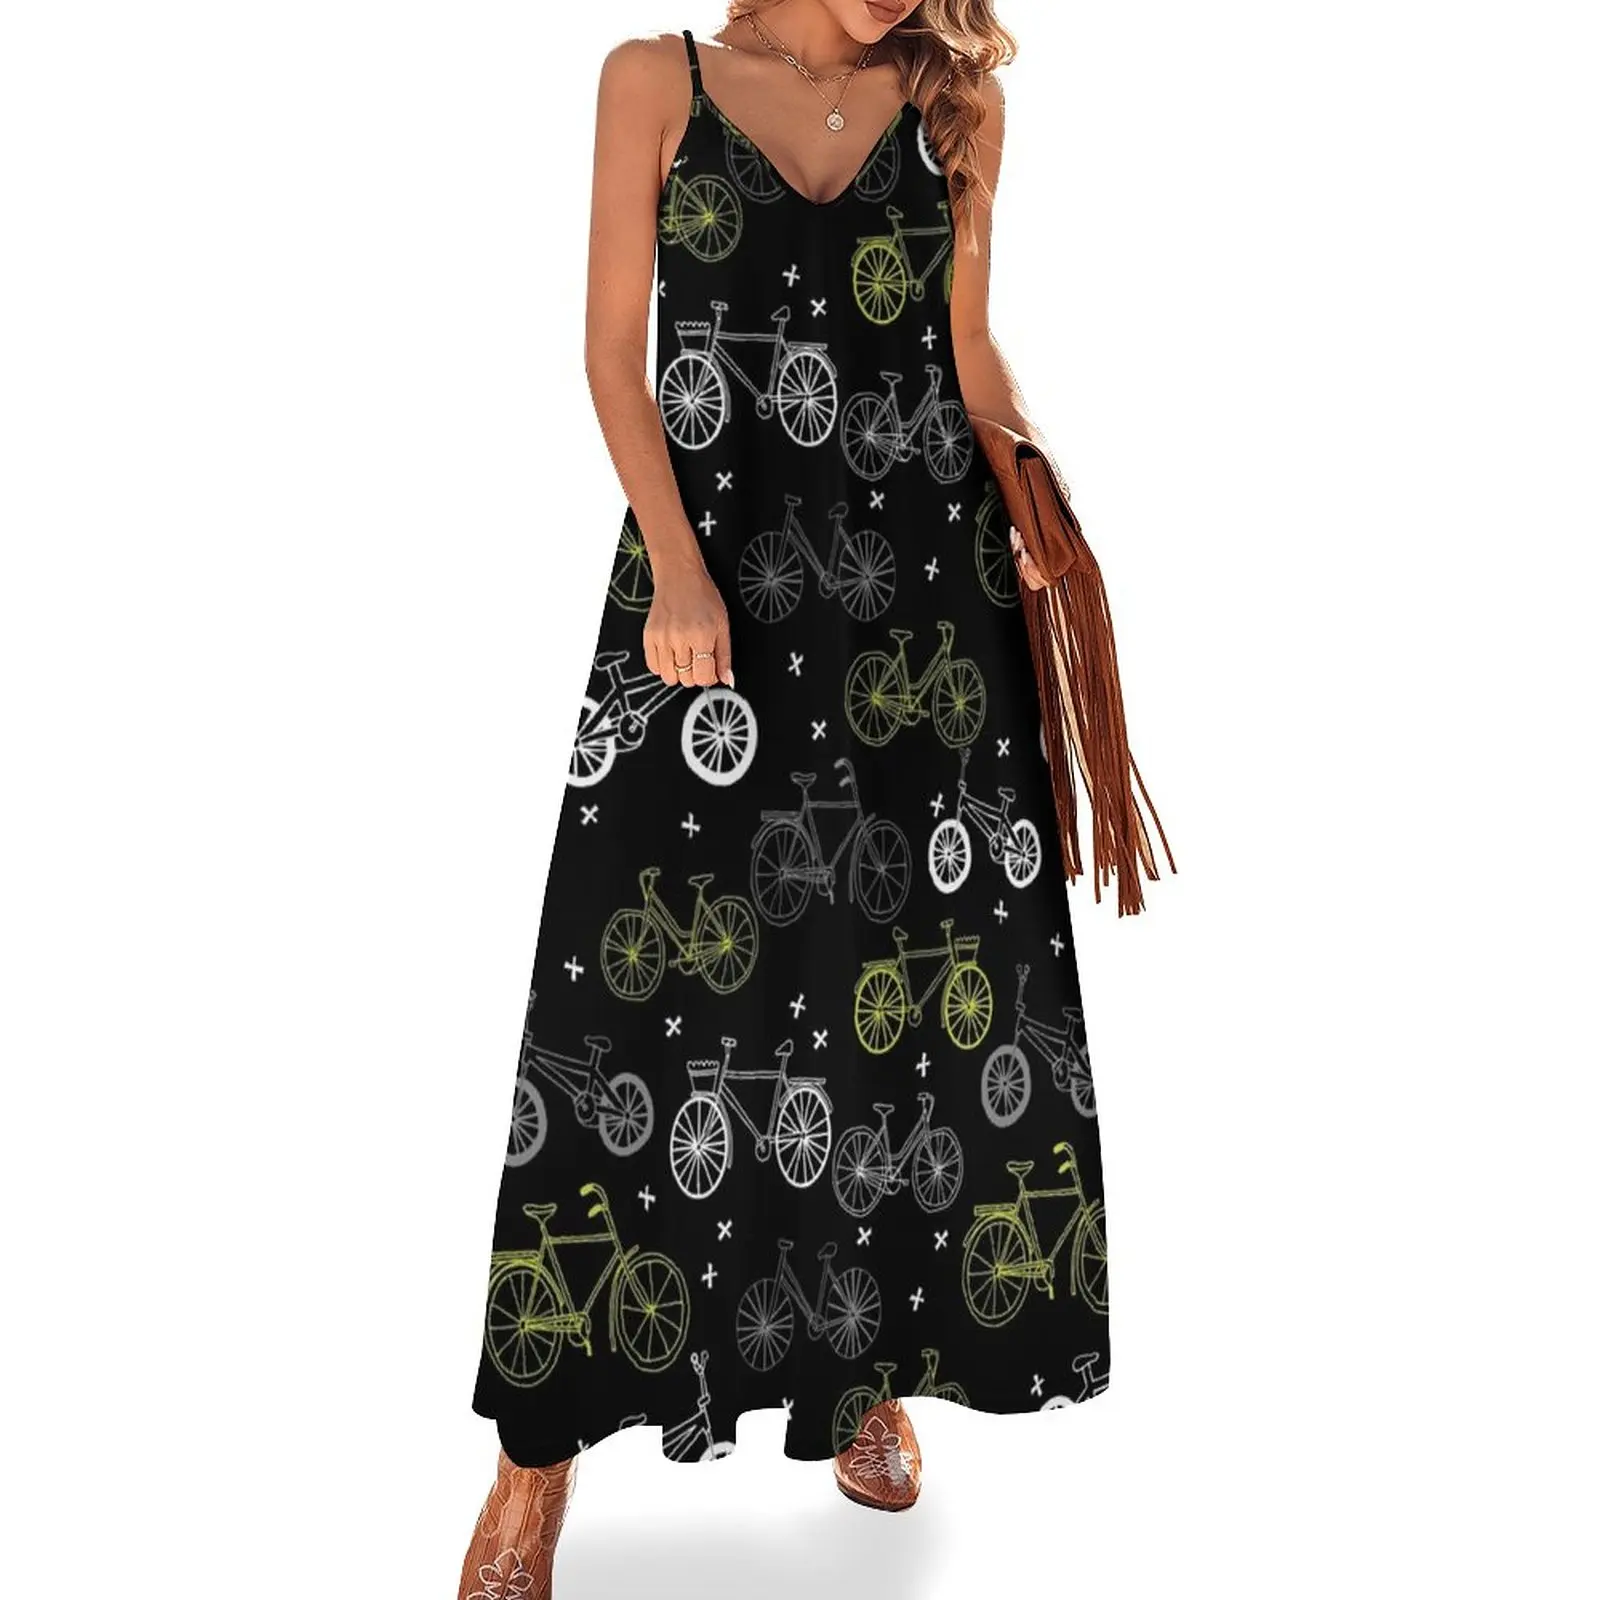 

Женское платье без рукавов, черно-серое платье с рисунком велосипедов от andrea lauren